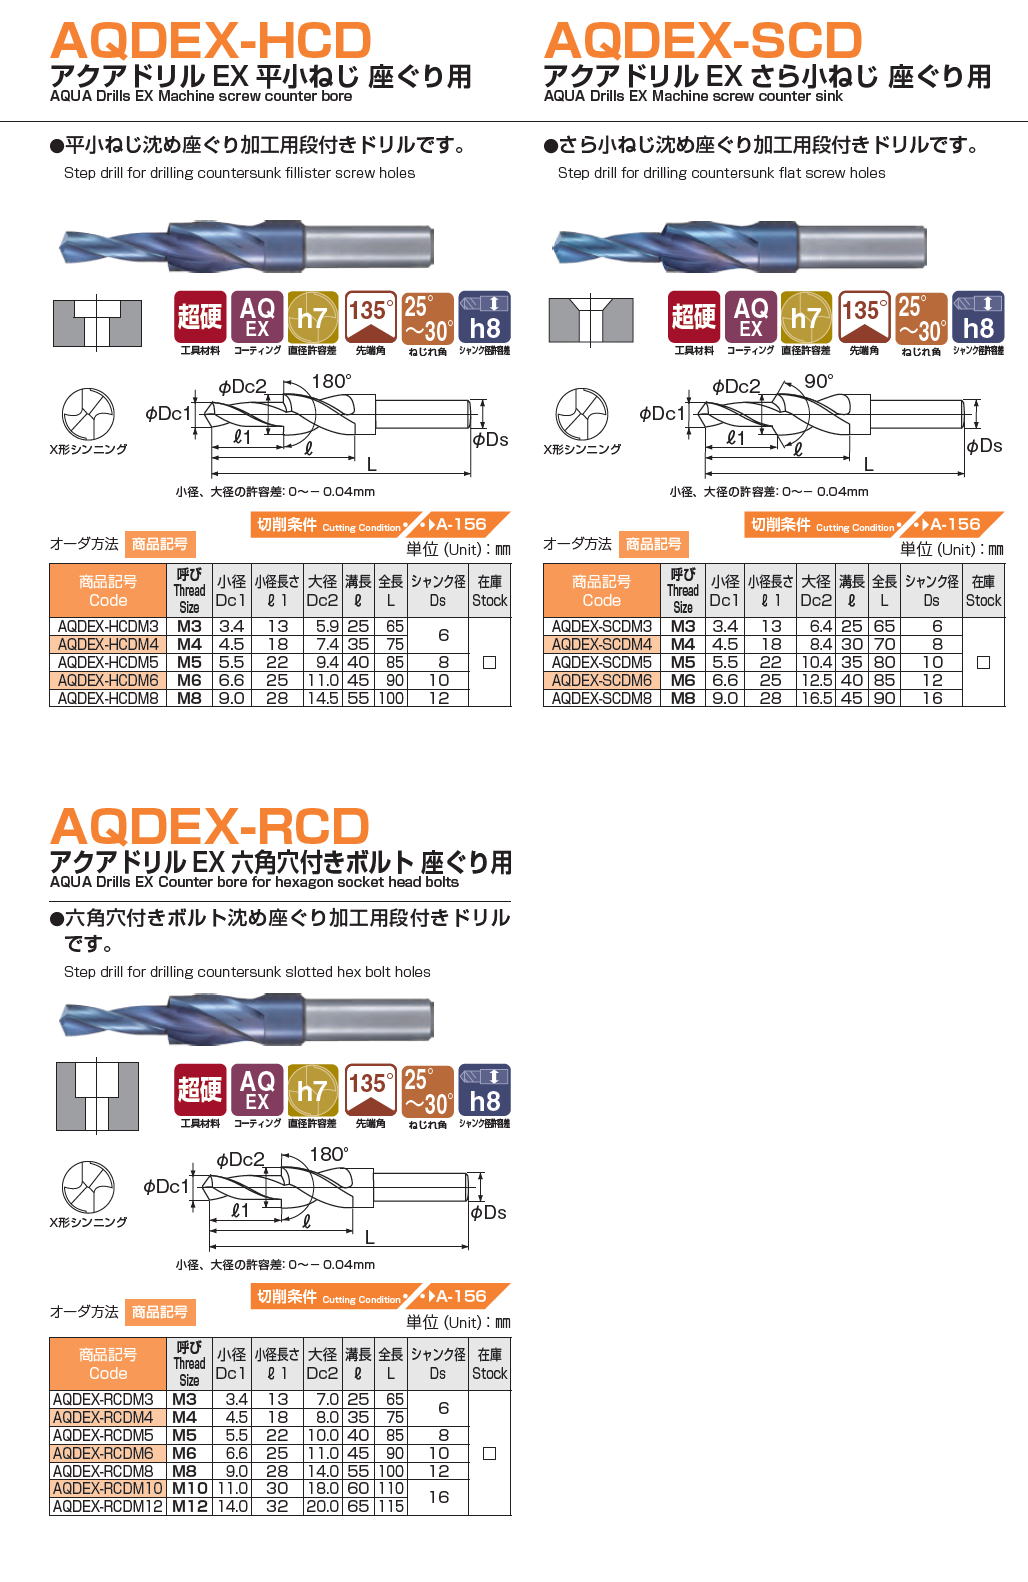 NACHI ナチ AQDEX-HCD アクアドリルEX 平小ねじ 座ぐり用 / アクアドリルEX さら小ねじ 座ぐり用 / アクアドリルEX